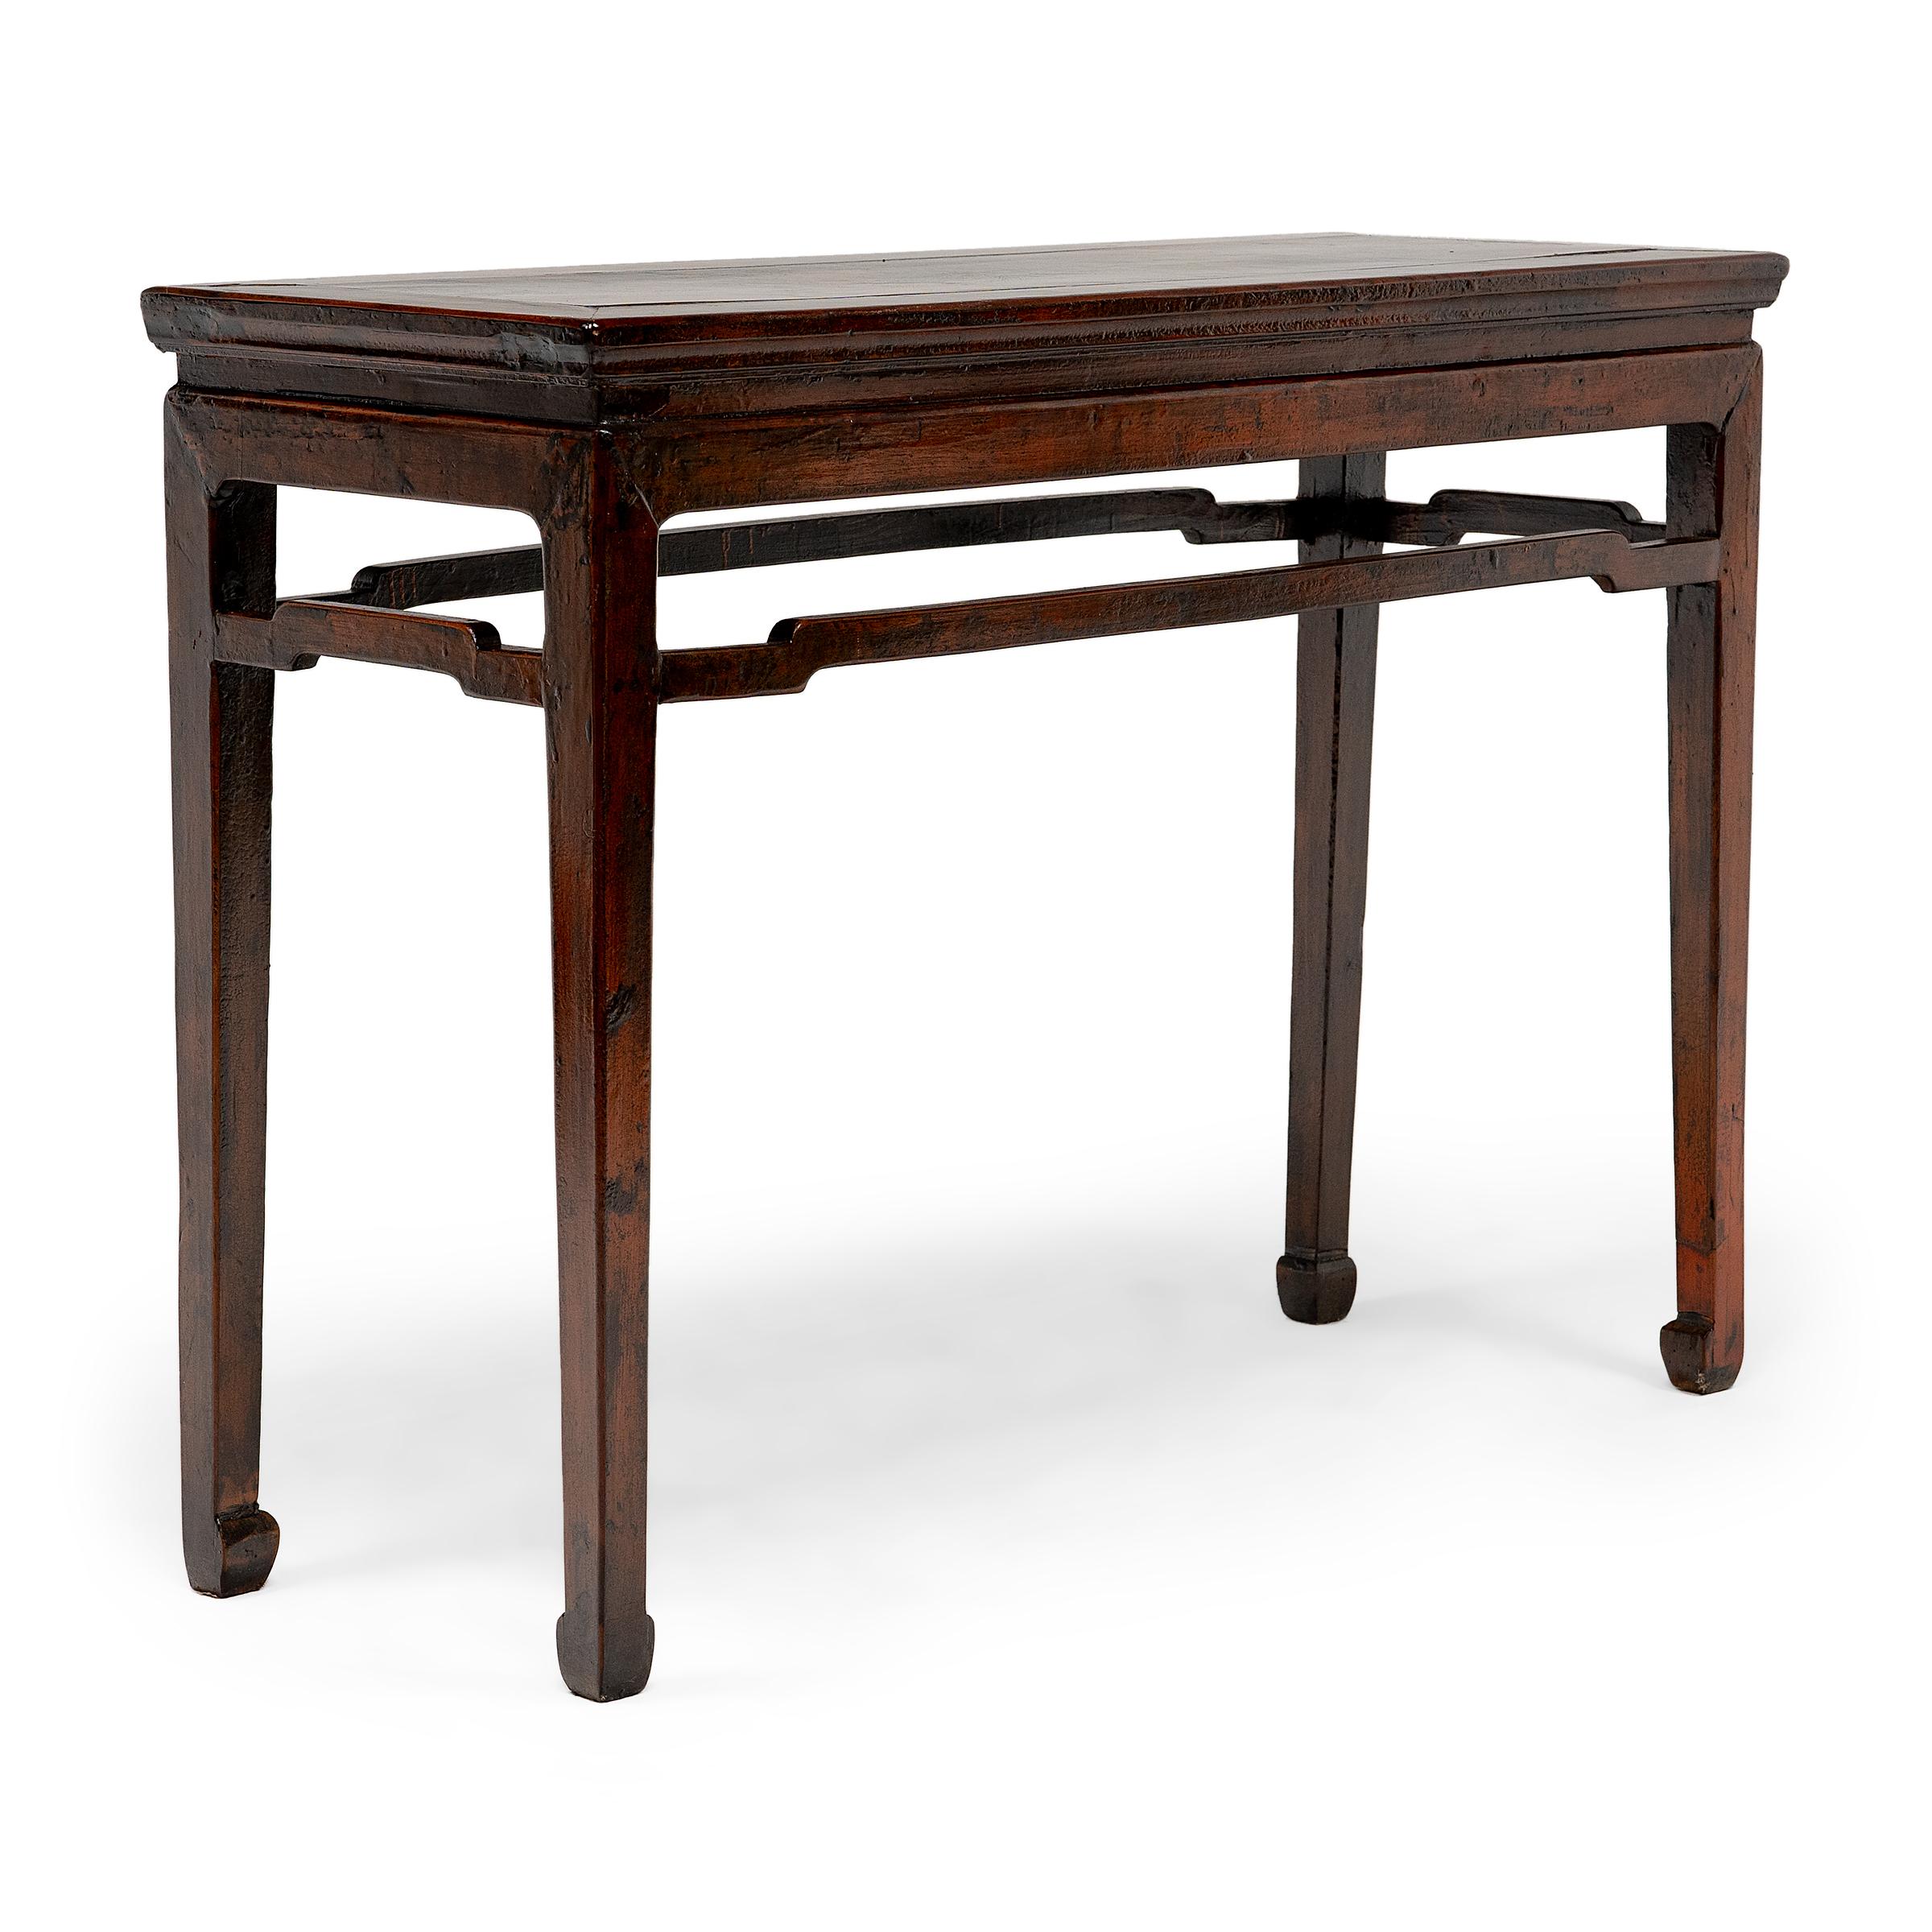 Perfectionnées sous la dynastie Ming, les techniques d'assemblage complexes ont permis aux artisans de créer des meubles aux lignes fluides, d'une grande légèreté et d'une durabilité remarquable. Fabriquée en pin, cette table d'offrande du XXe